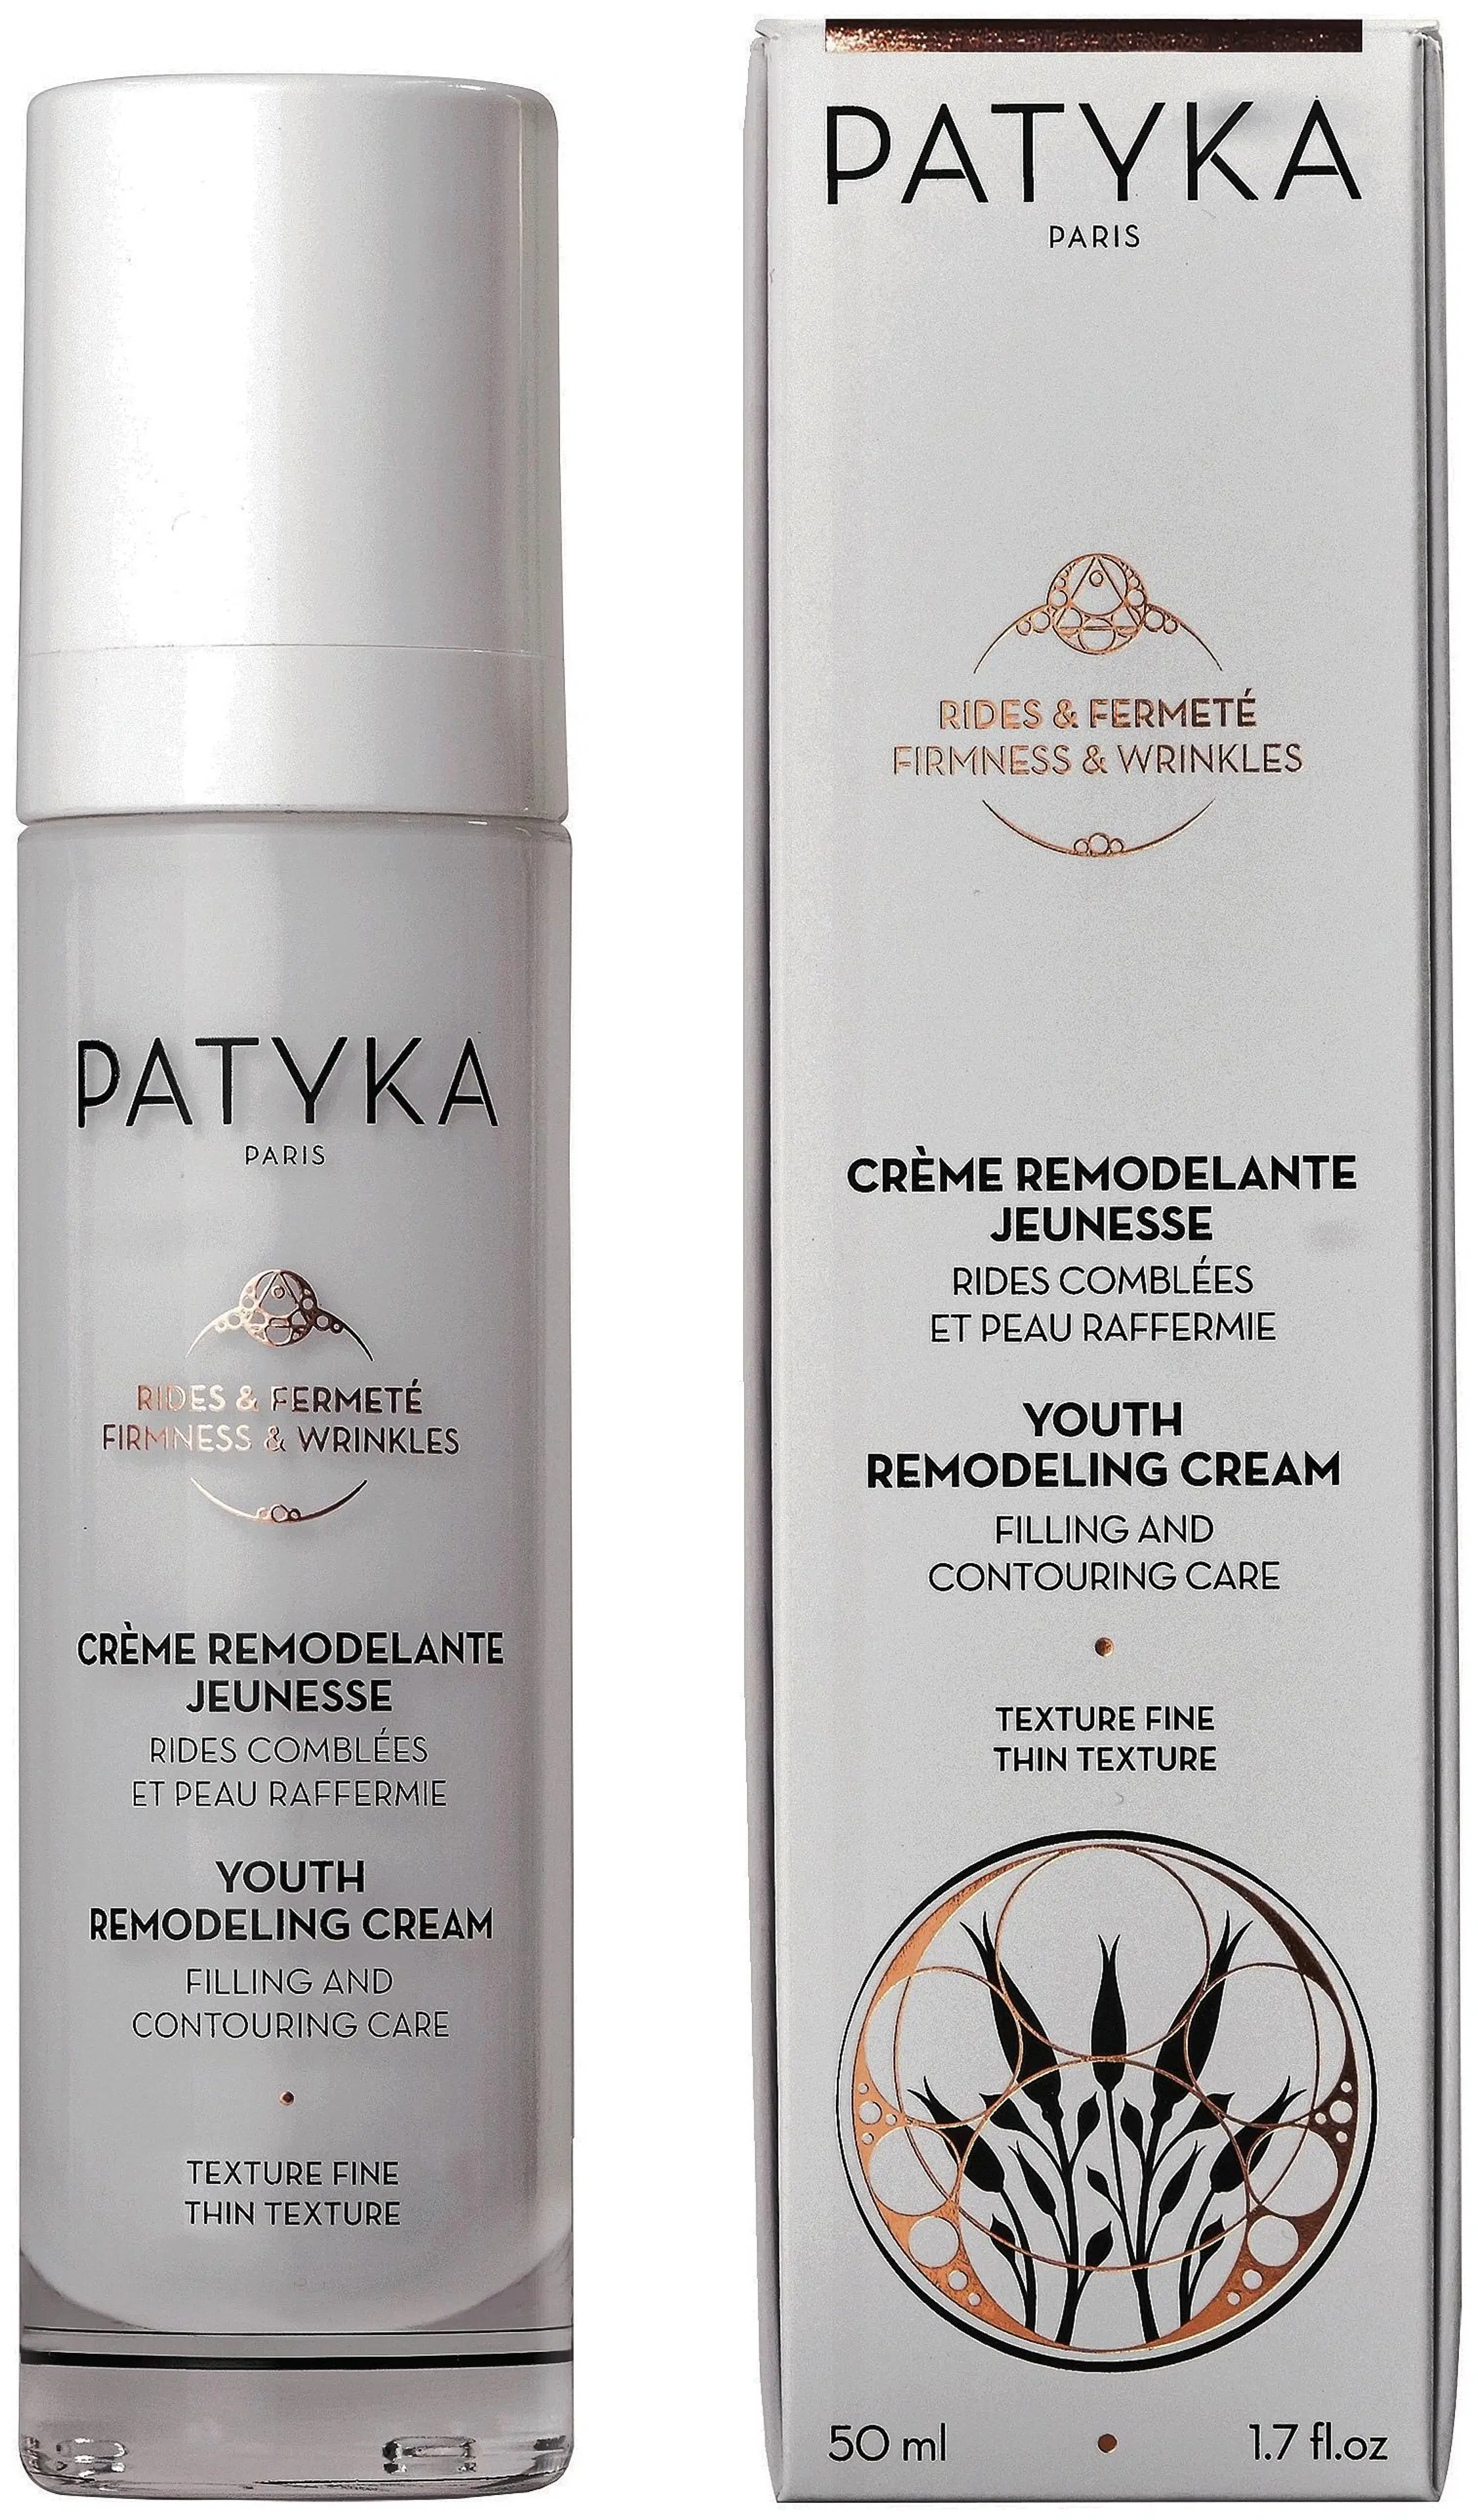 Patyka Youth Remodeling Cream Thin Texture kiinteyttävä kevyt kasvovoide 50 ml